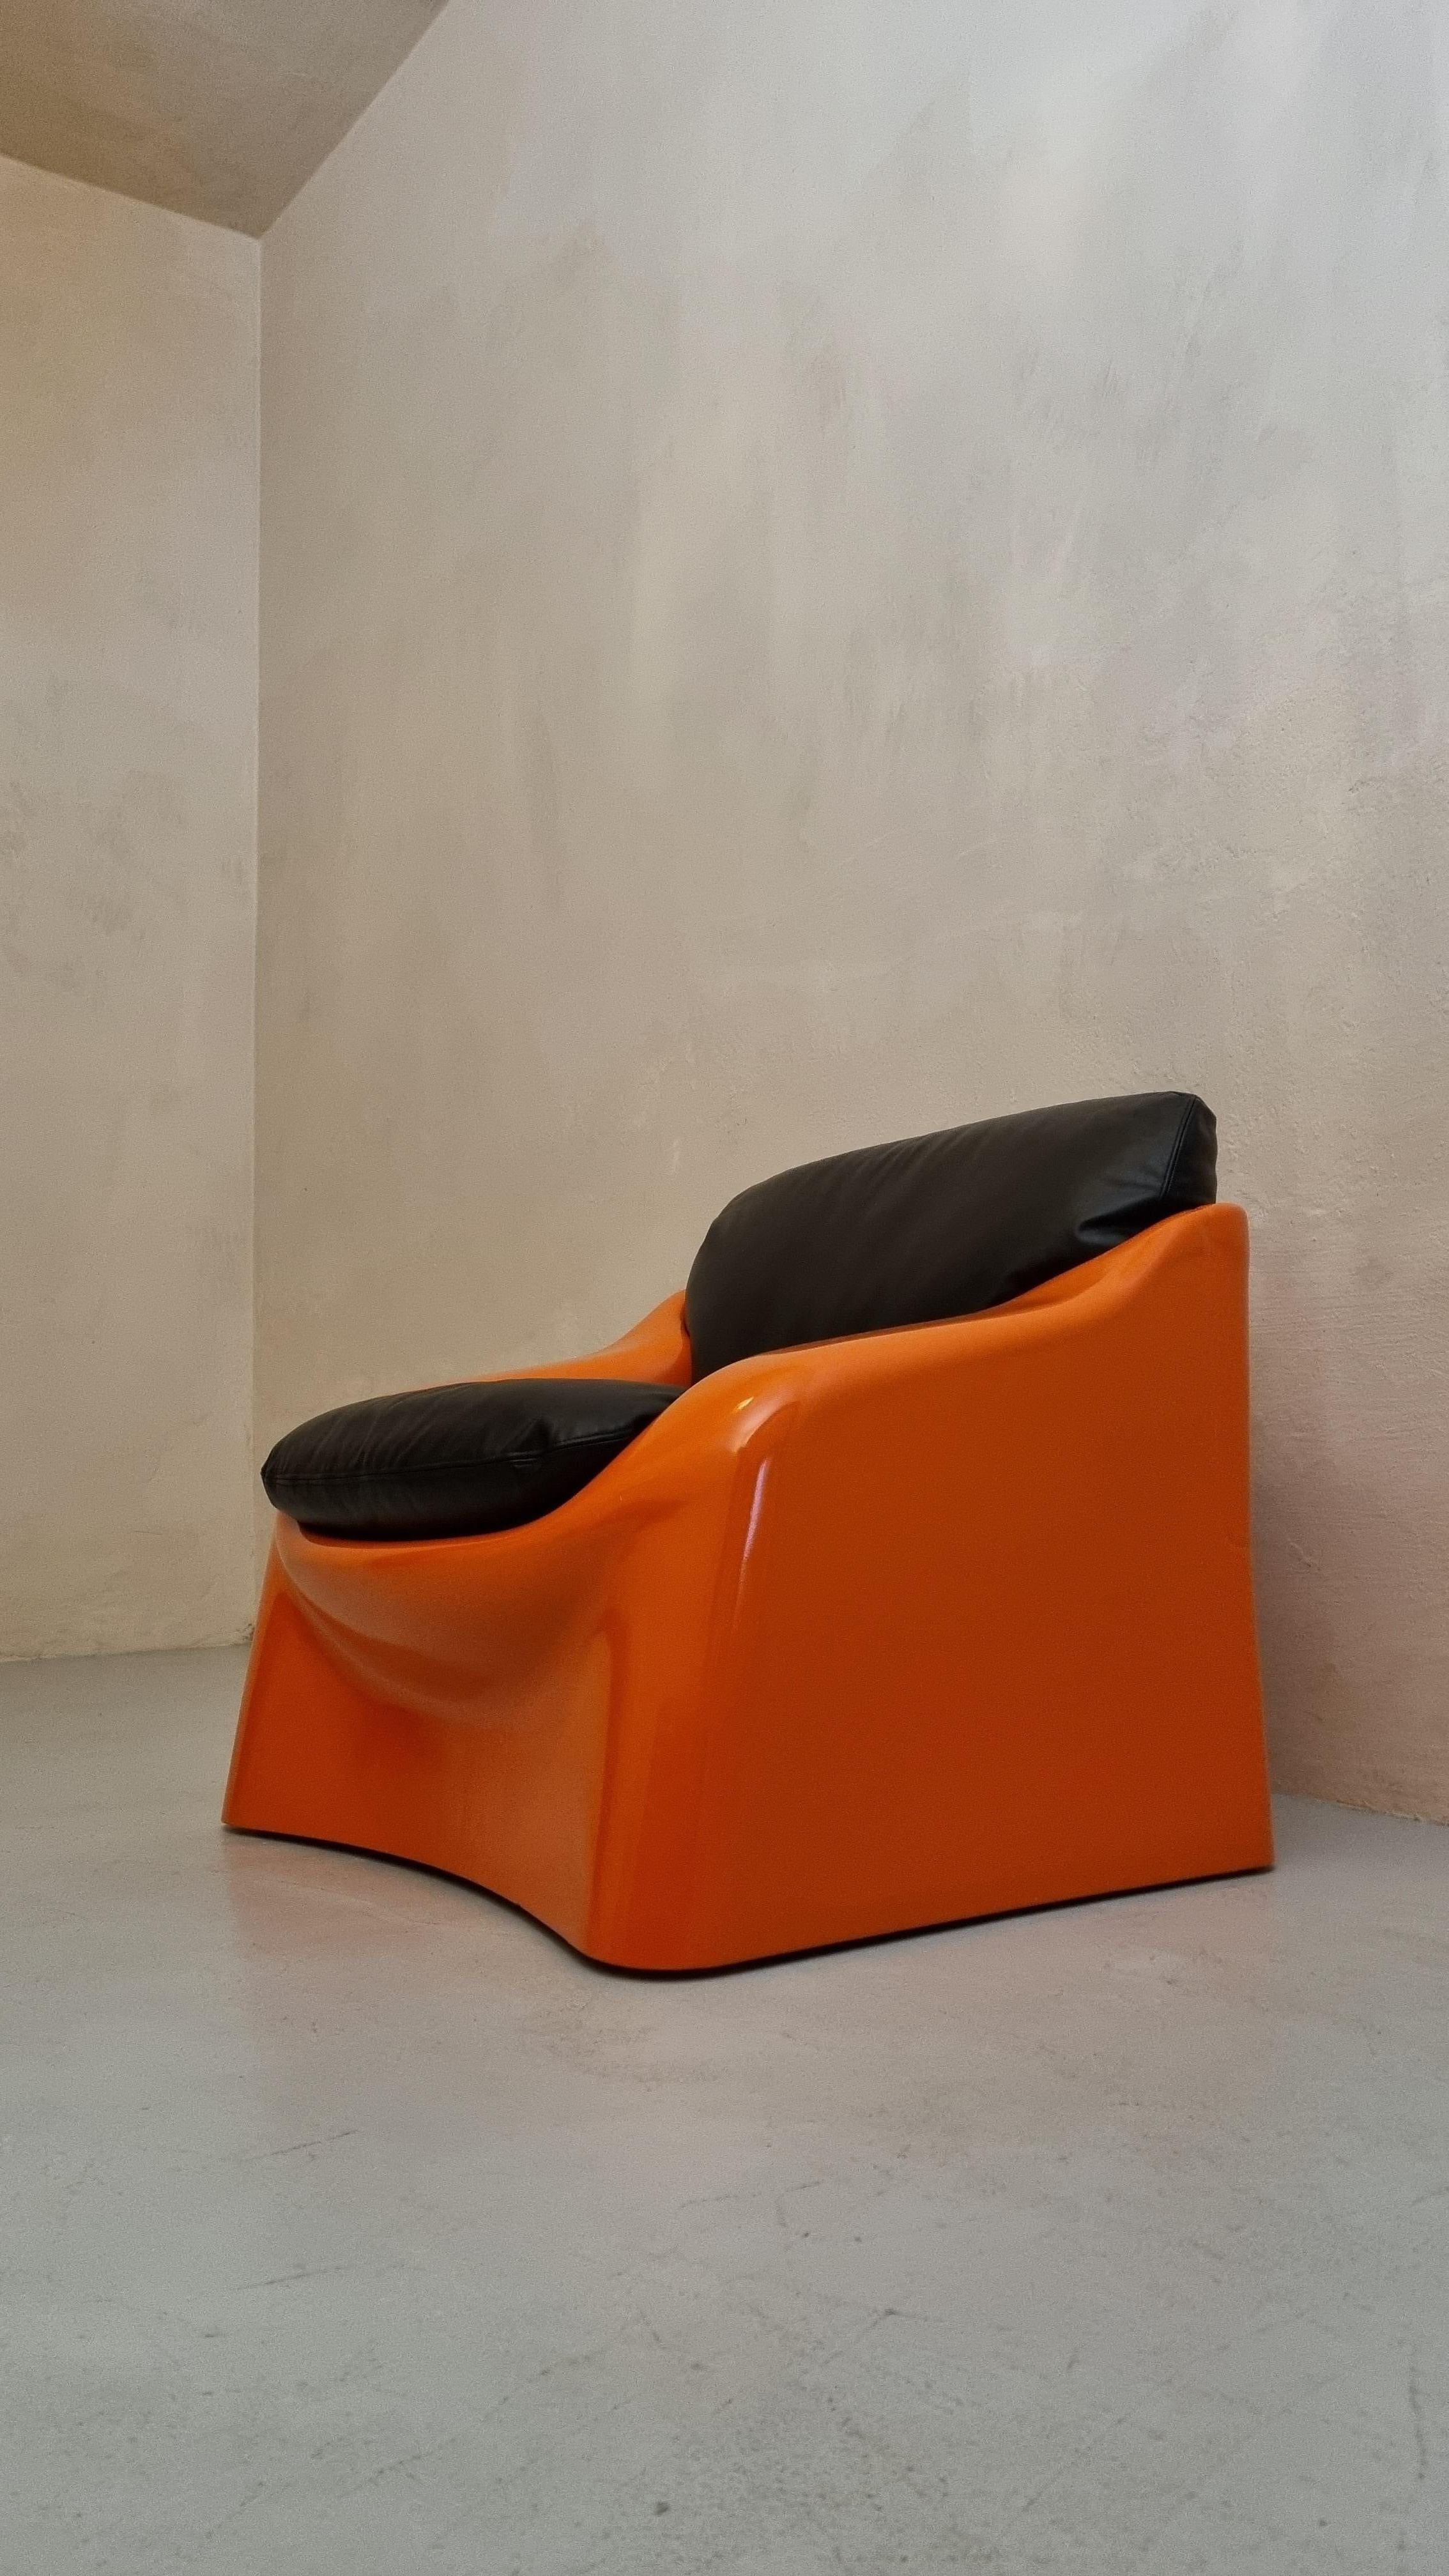 Sessel Galassia, entworfen von Ferdinando Buzzi für Ferruccio Brunati, 70er Jahre.
Struktur aus stoßfestem Polystyrol und Kunststoffbeschichtung, Sitz aus Rindsleder.
Ein gültiges Zeugnis der ersten Versuche, stoßfesten Kunststoff im Bereich der